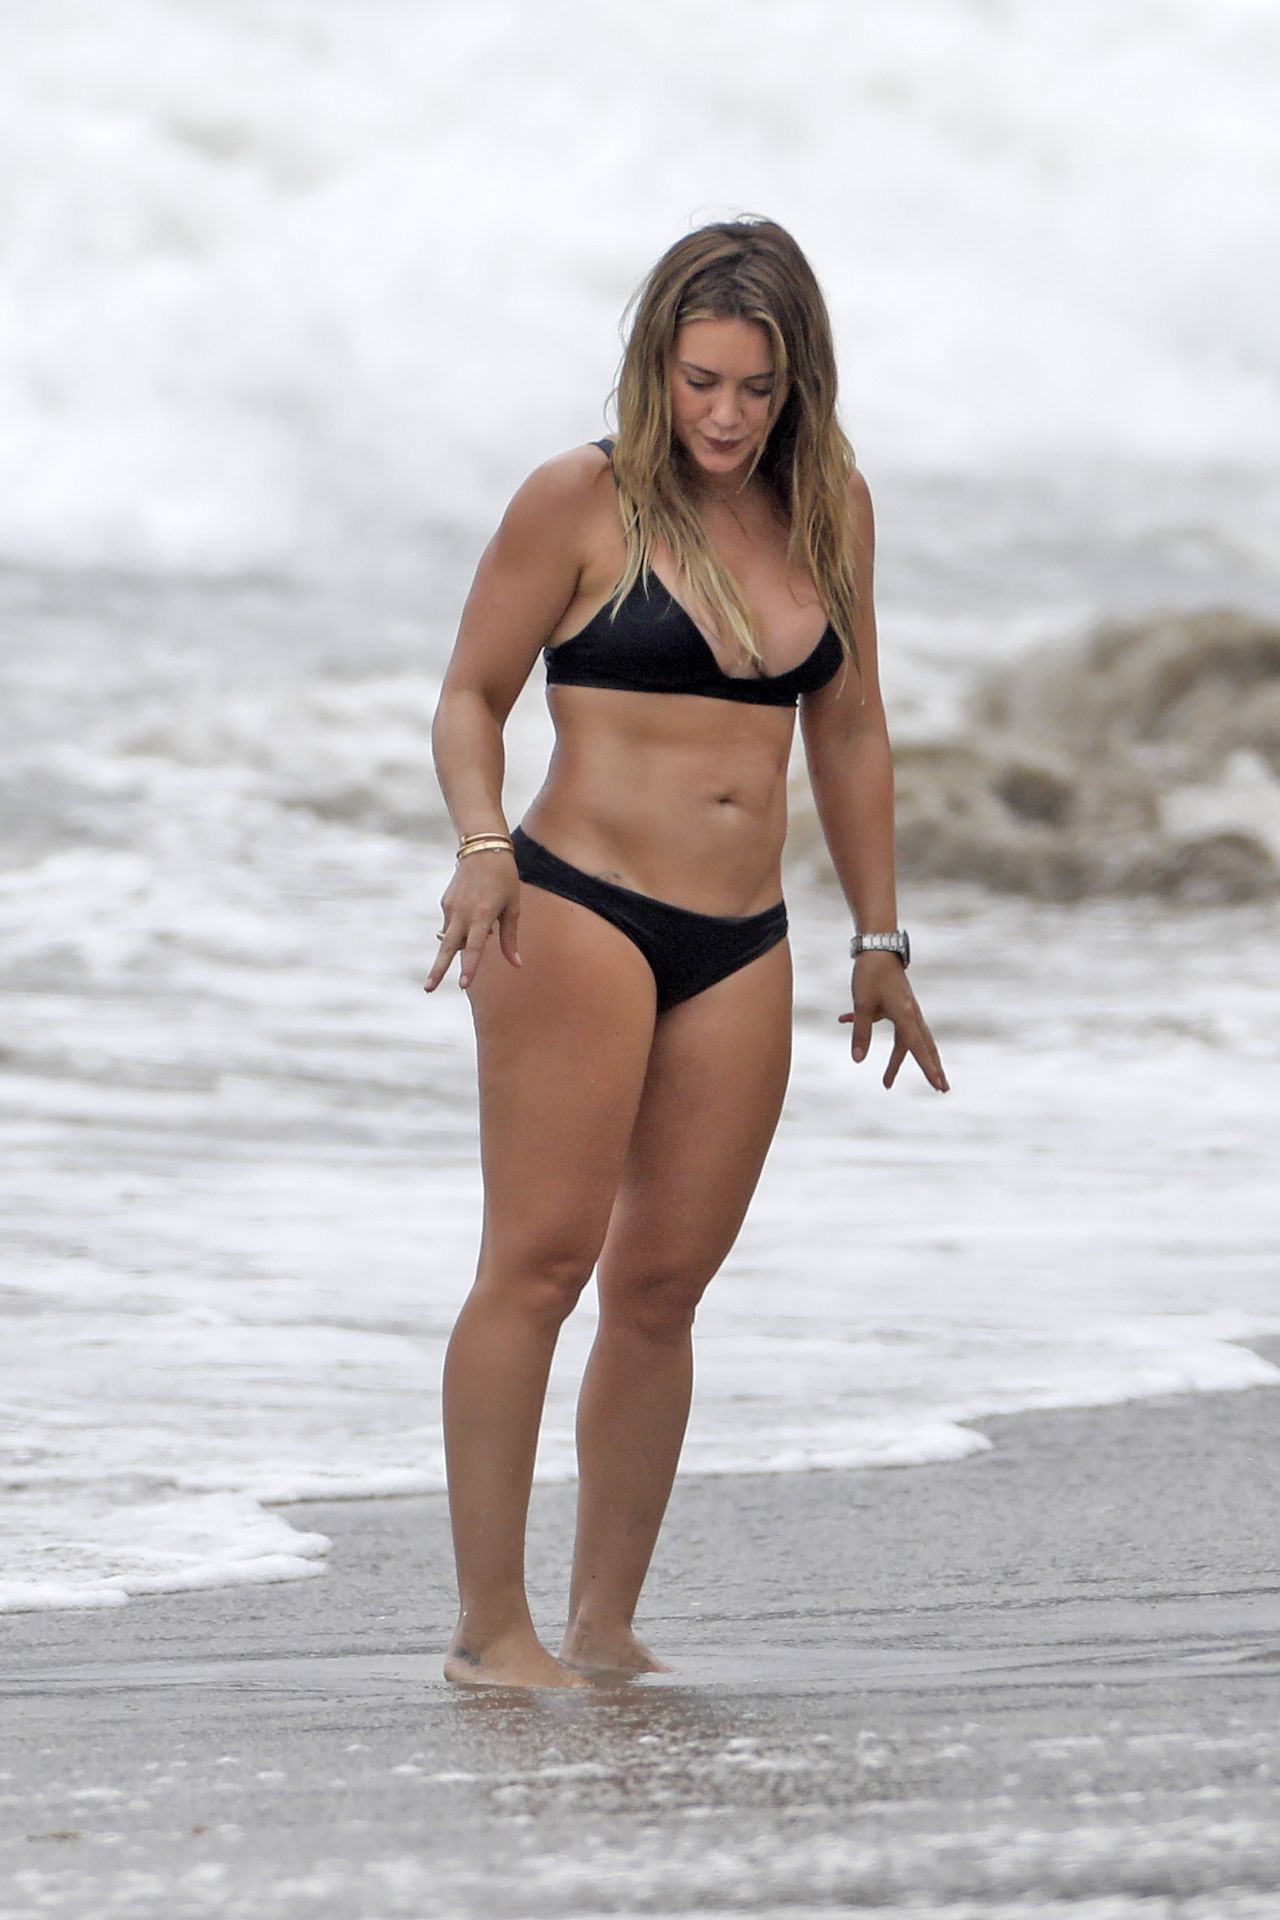 Hilary Duff In Black Bikini - Beach In Malibu 09042017-3563